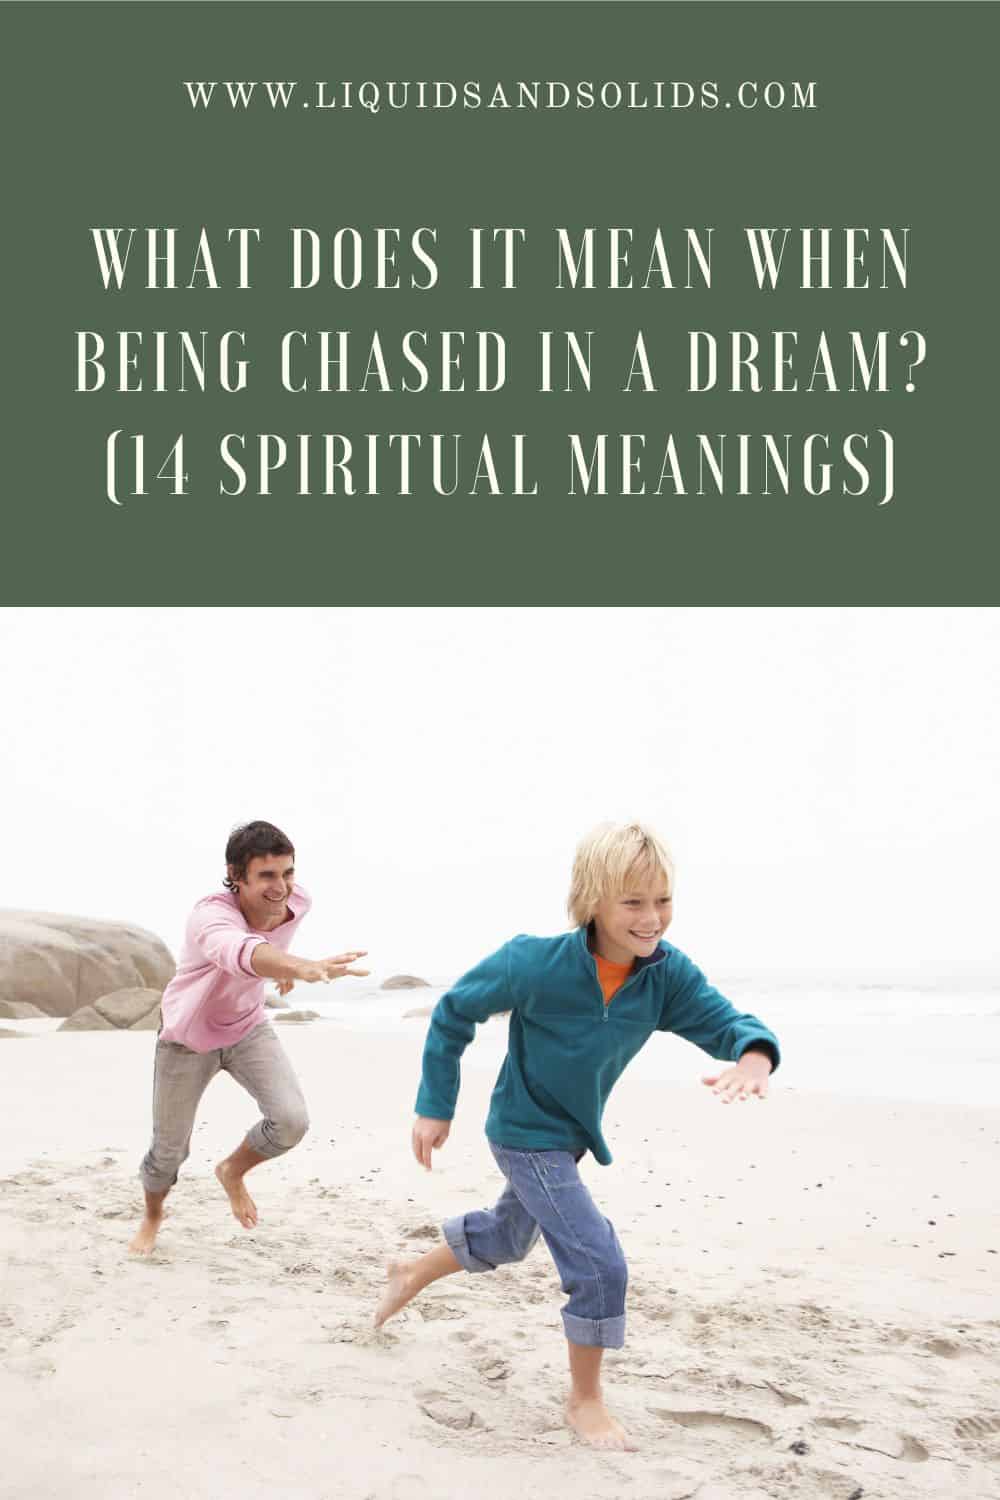  Mit jelent, ha álmomban üldöznek? (14 spirituális jelentés)